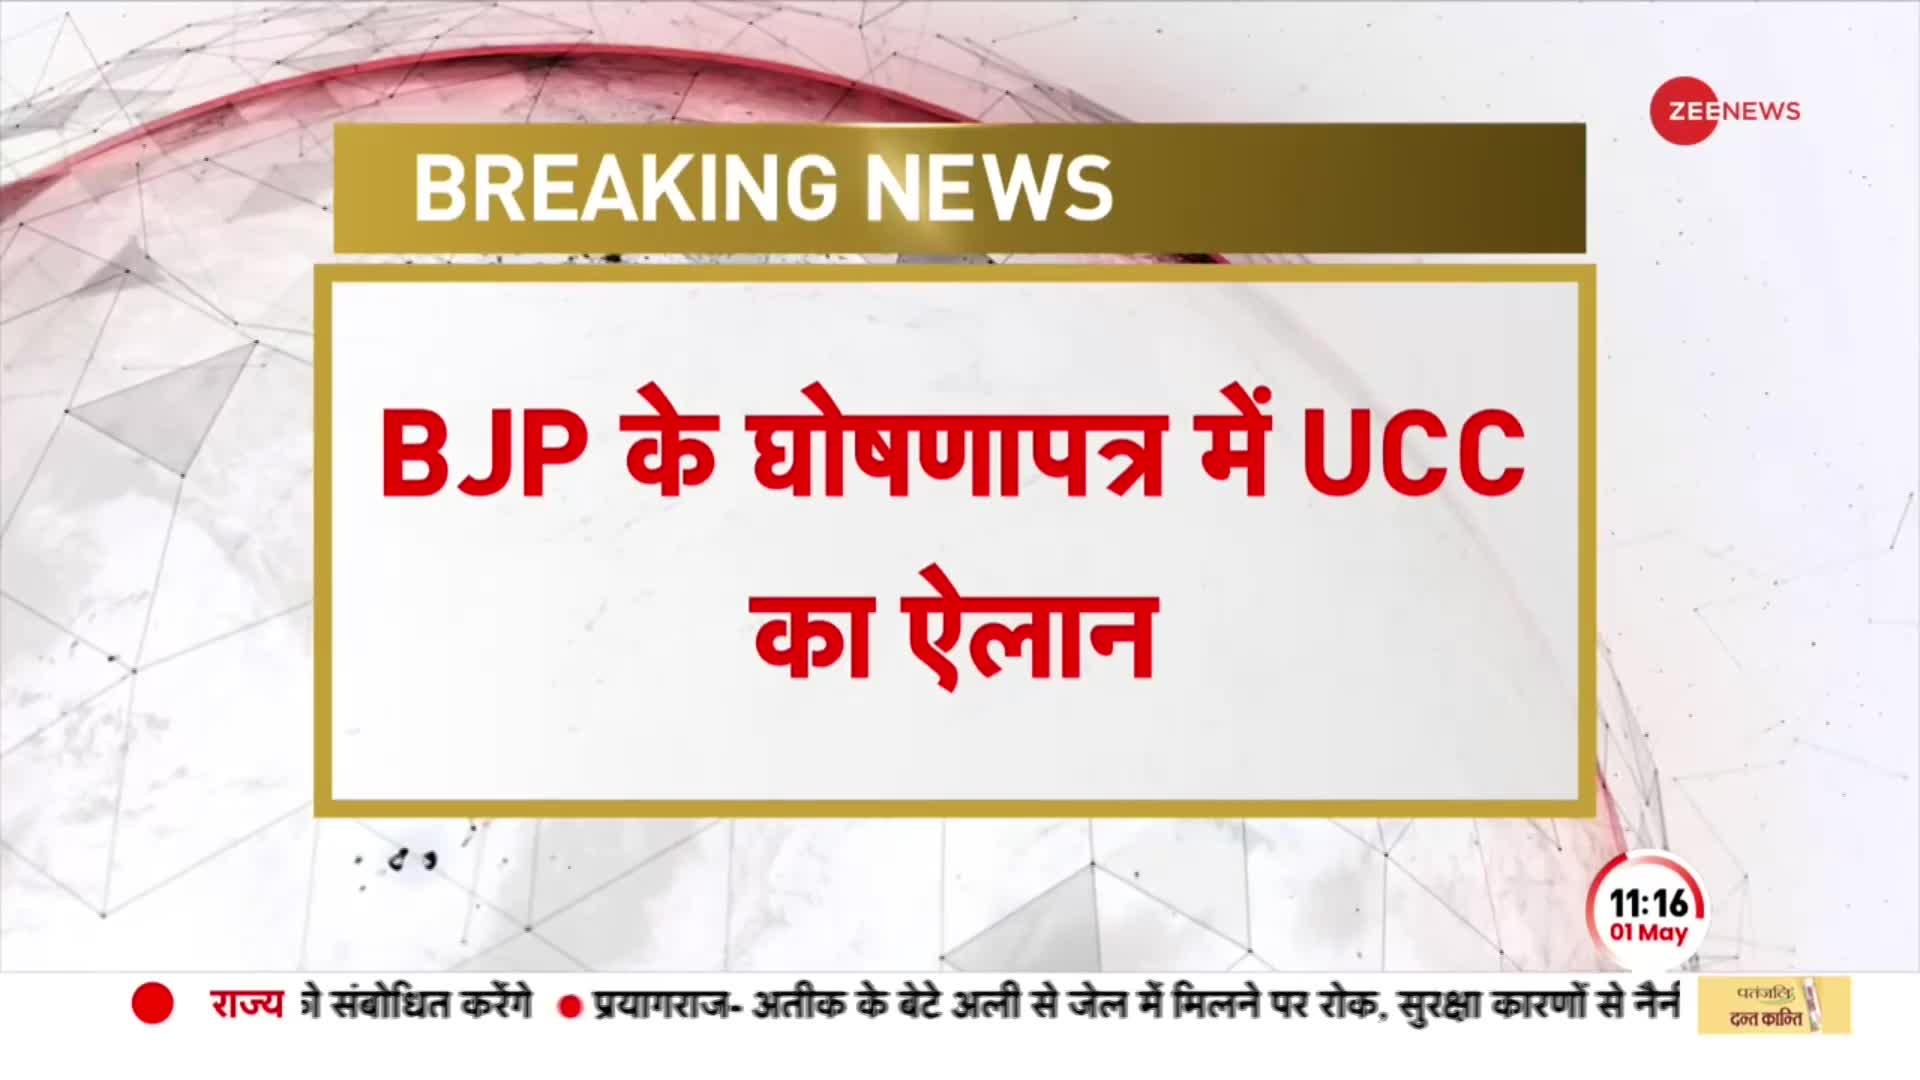 Breaking News: कर्नाटक में BJP ने जारी किया घोषणापत्र, UCC लागू करने का किया वादा